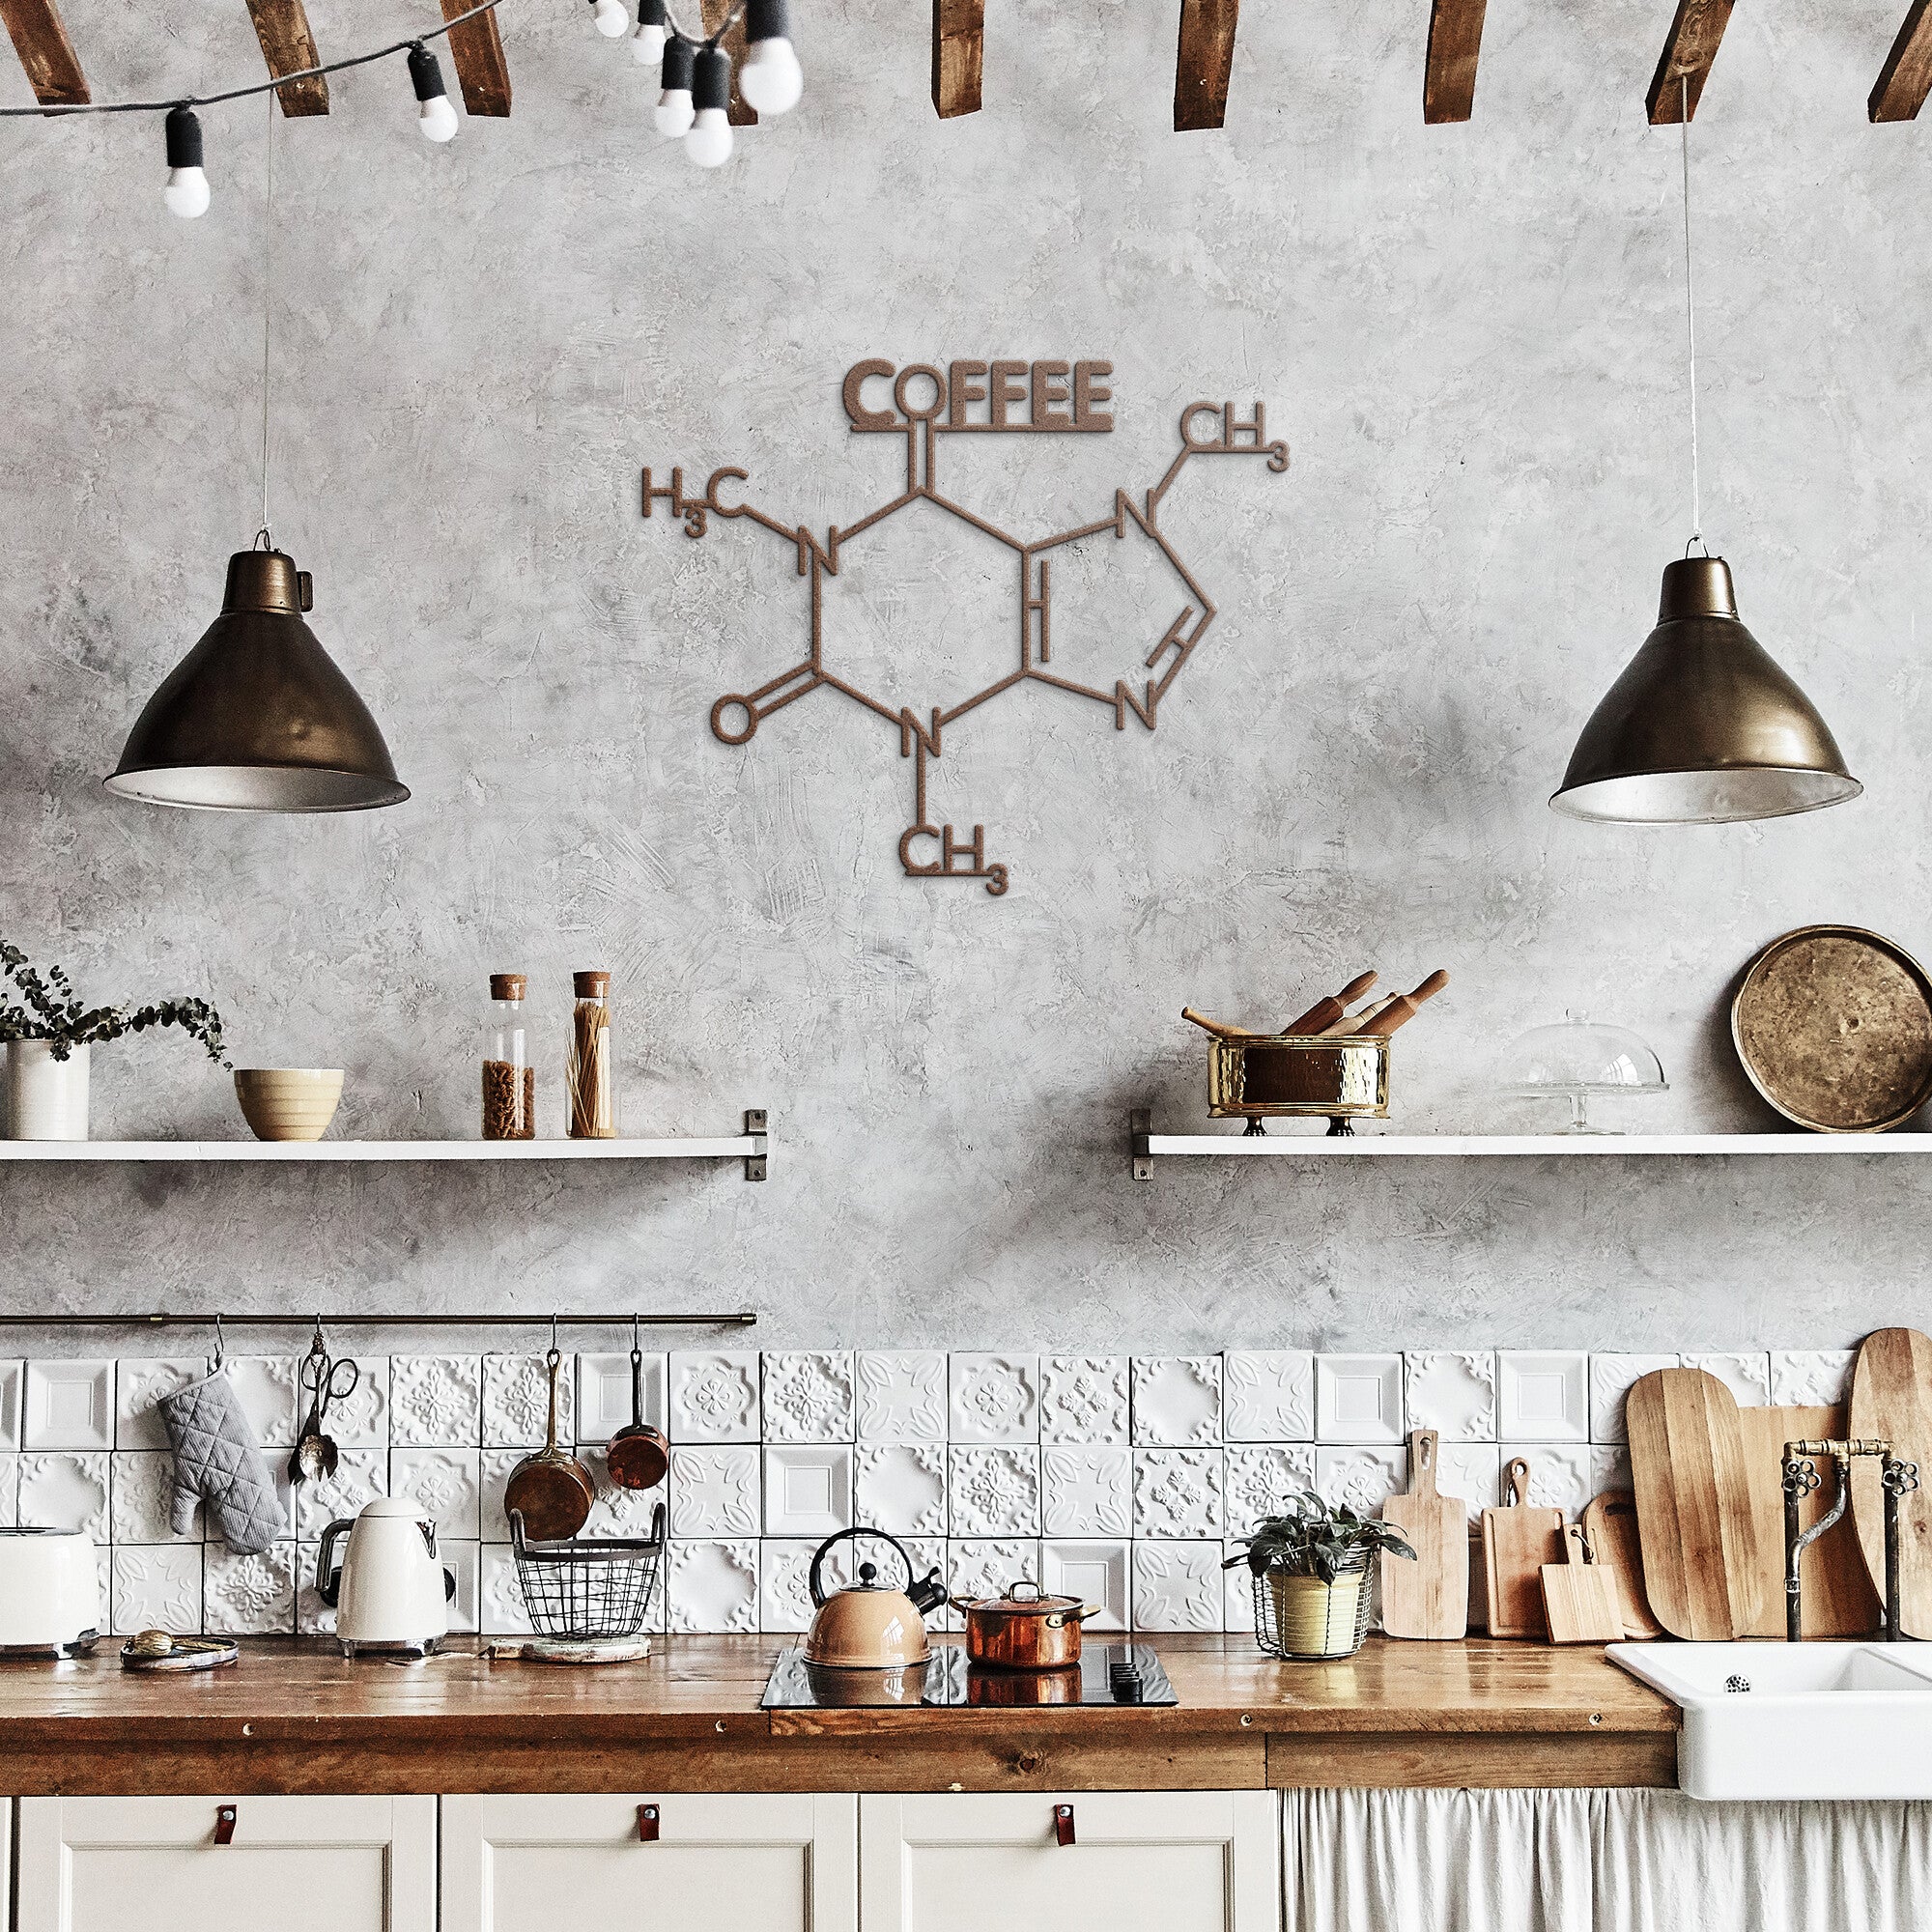 Coffee Molecule Metal Wall Art in copper in kitchen